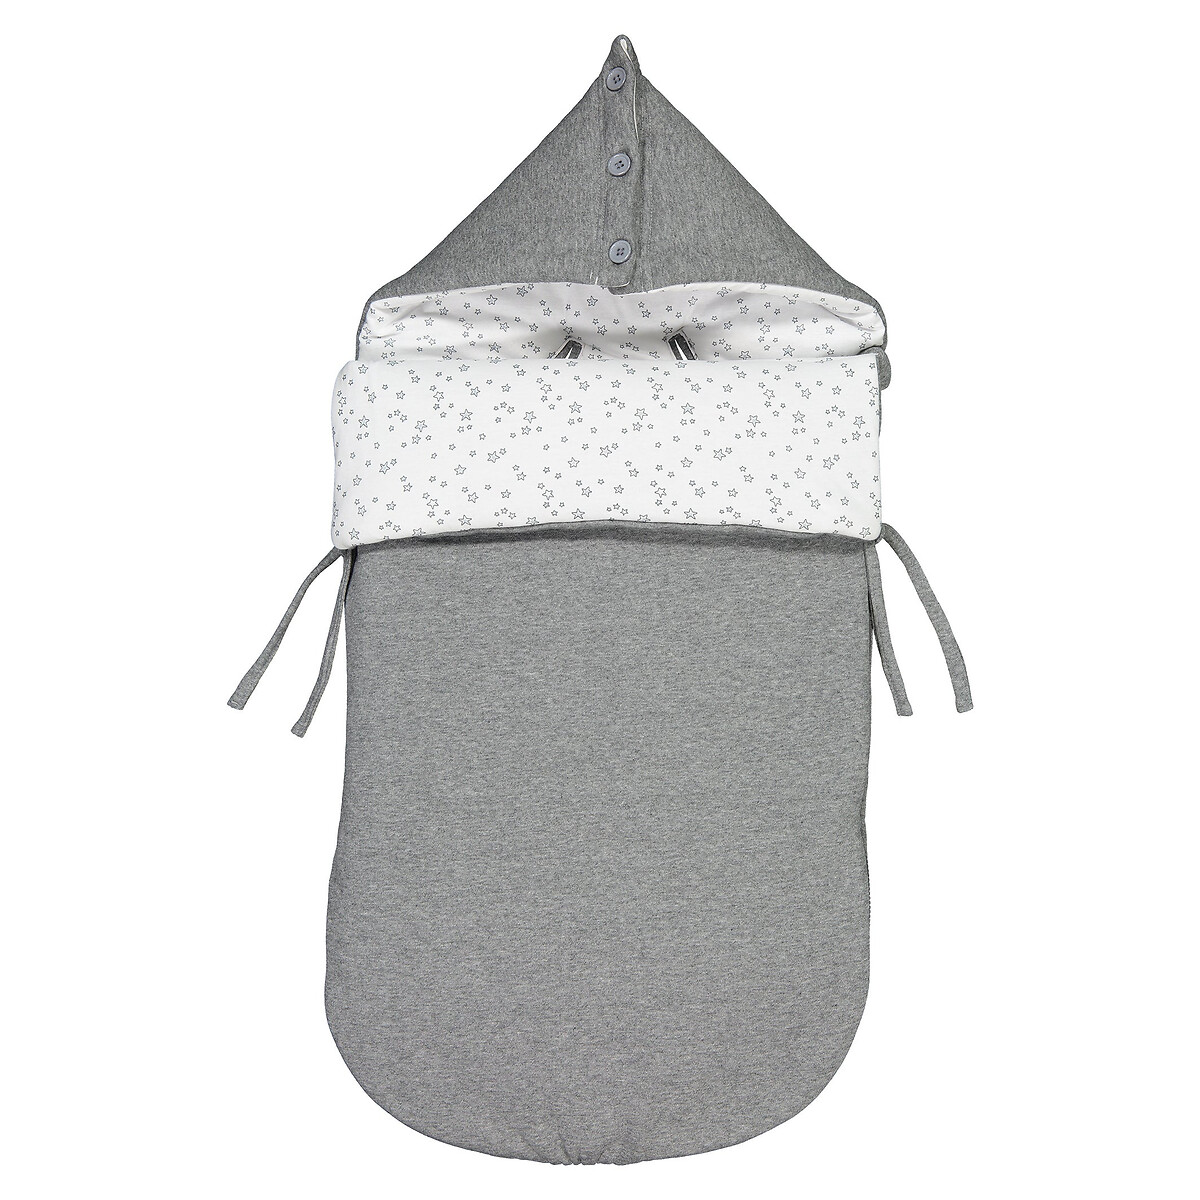 Конверт La Redoute Для новорожденного с капюшоном единый размер серый - фото 1